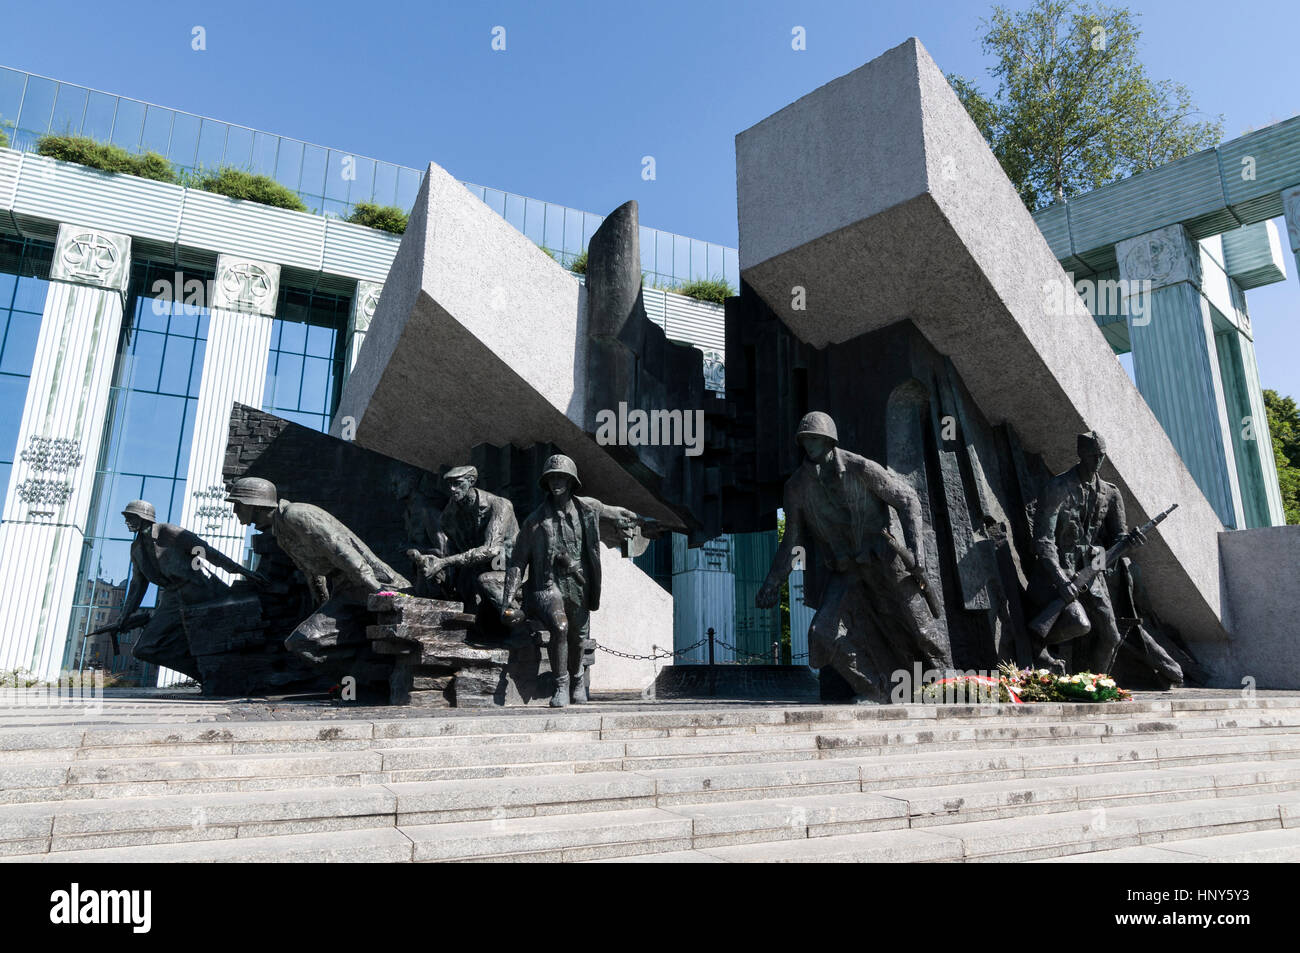 Pomnik Powstania Warszawskiego - Monument à l'Insurrection de Varsovie à Krasinski Square en face de la Sad Najwyzszy - Cour suprême, à Varsovie, Pologne Banque D'Images